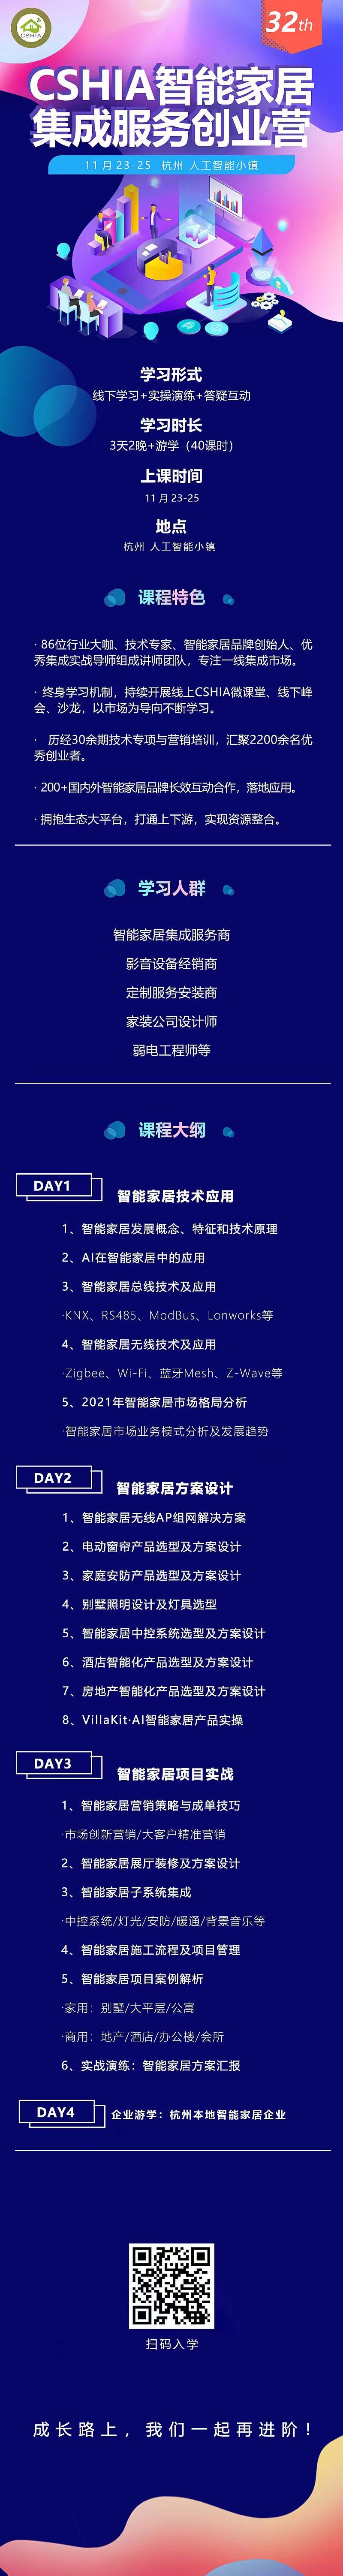 2021智能家居集成服务峰会广州站成功举办 新闻资讯 第24张